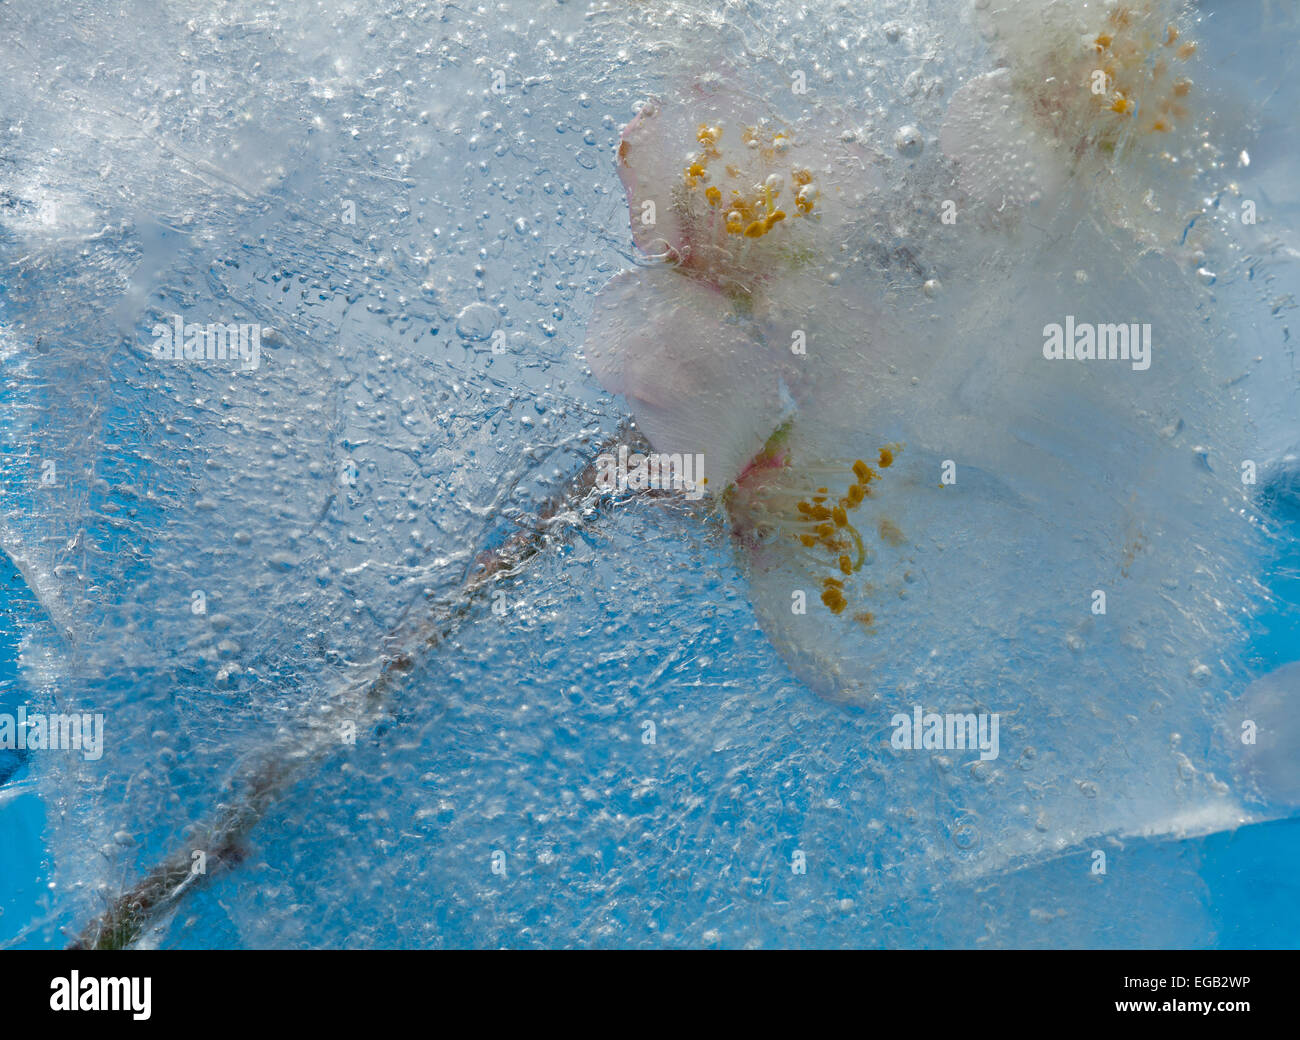 Flore - fleurs d'amandier congelé dans un bloc de glace Banque D'Images